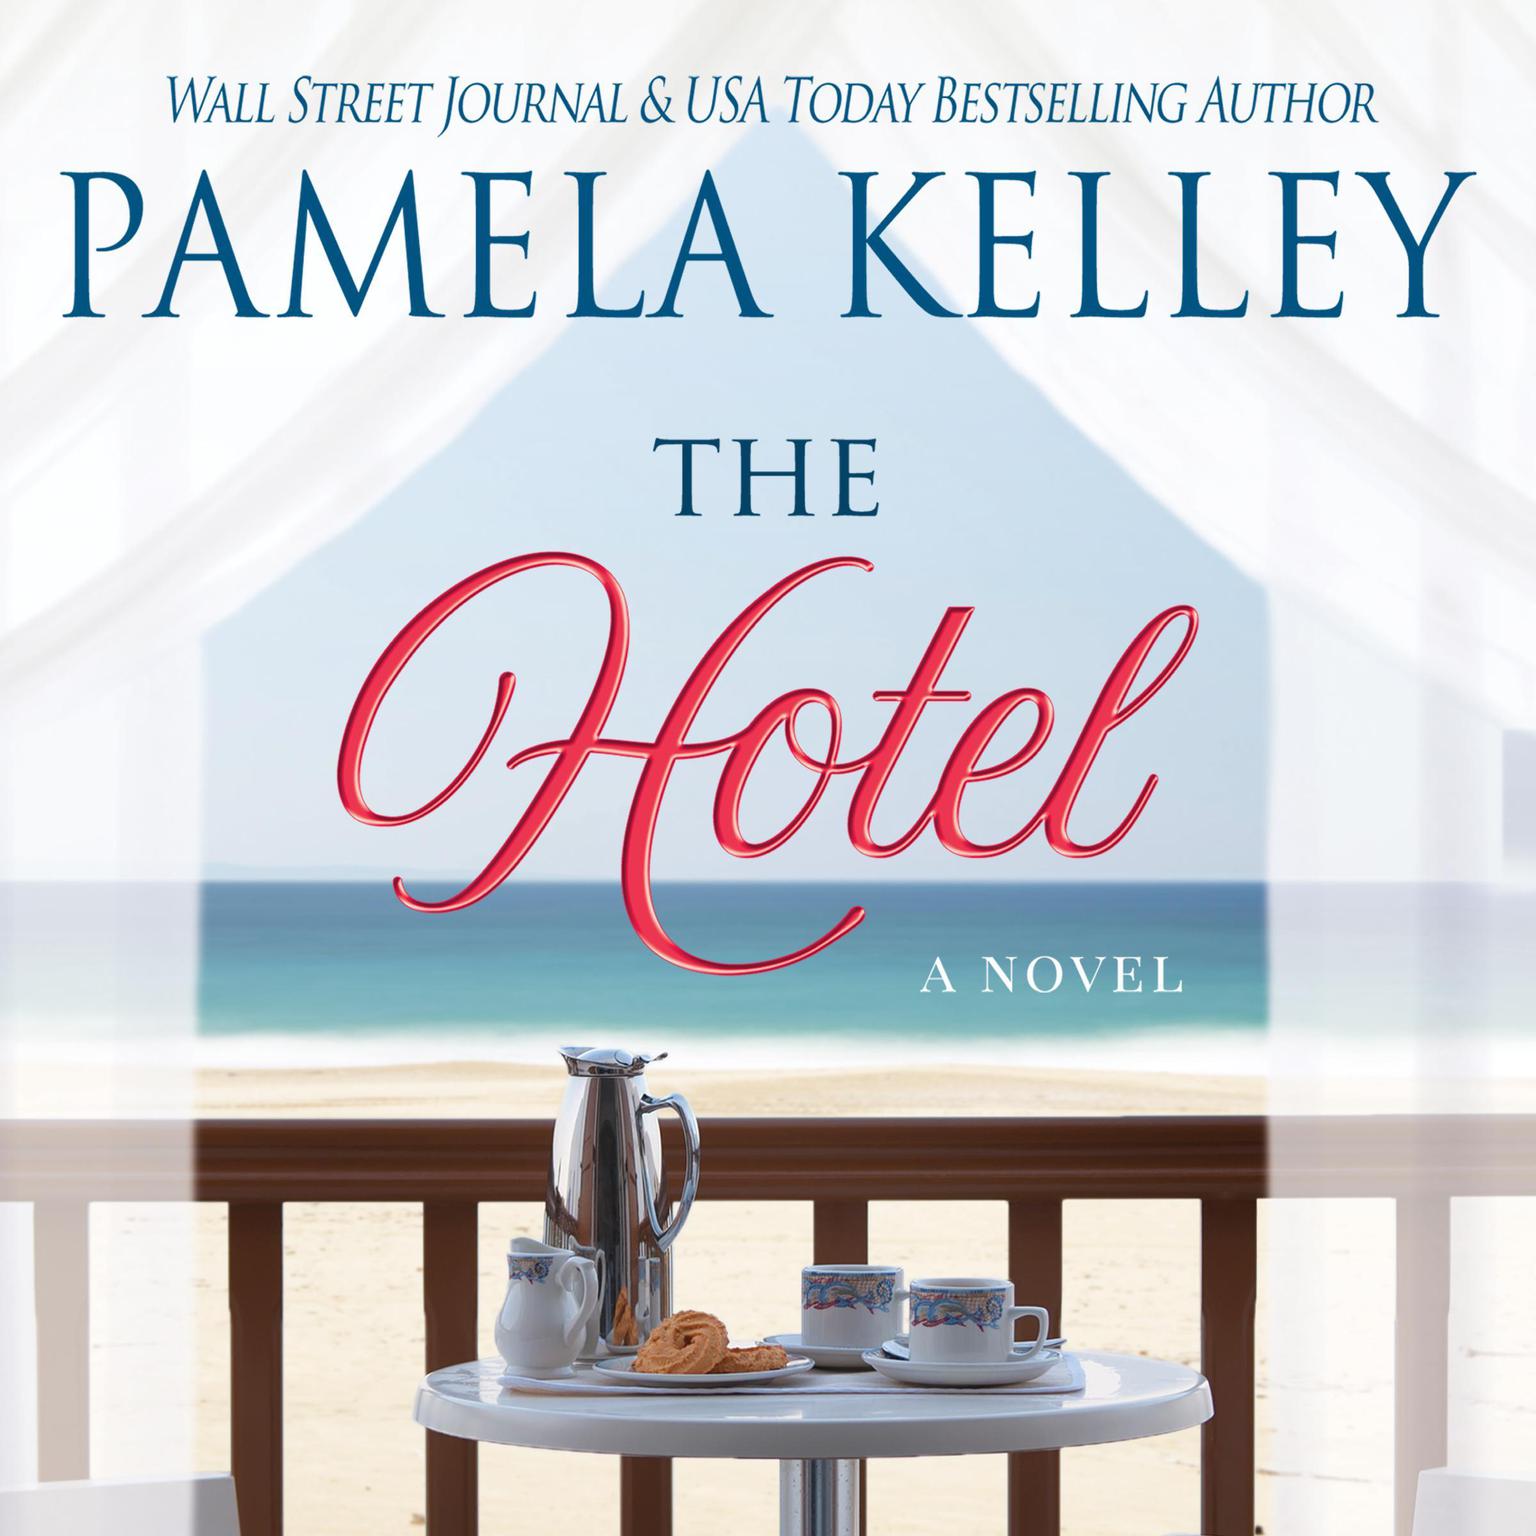 The Hotel Audiobook, by Pamela Kelley